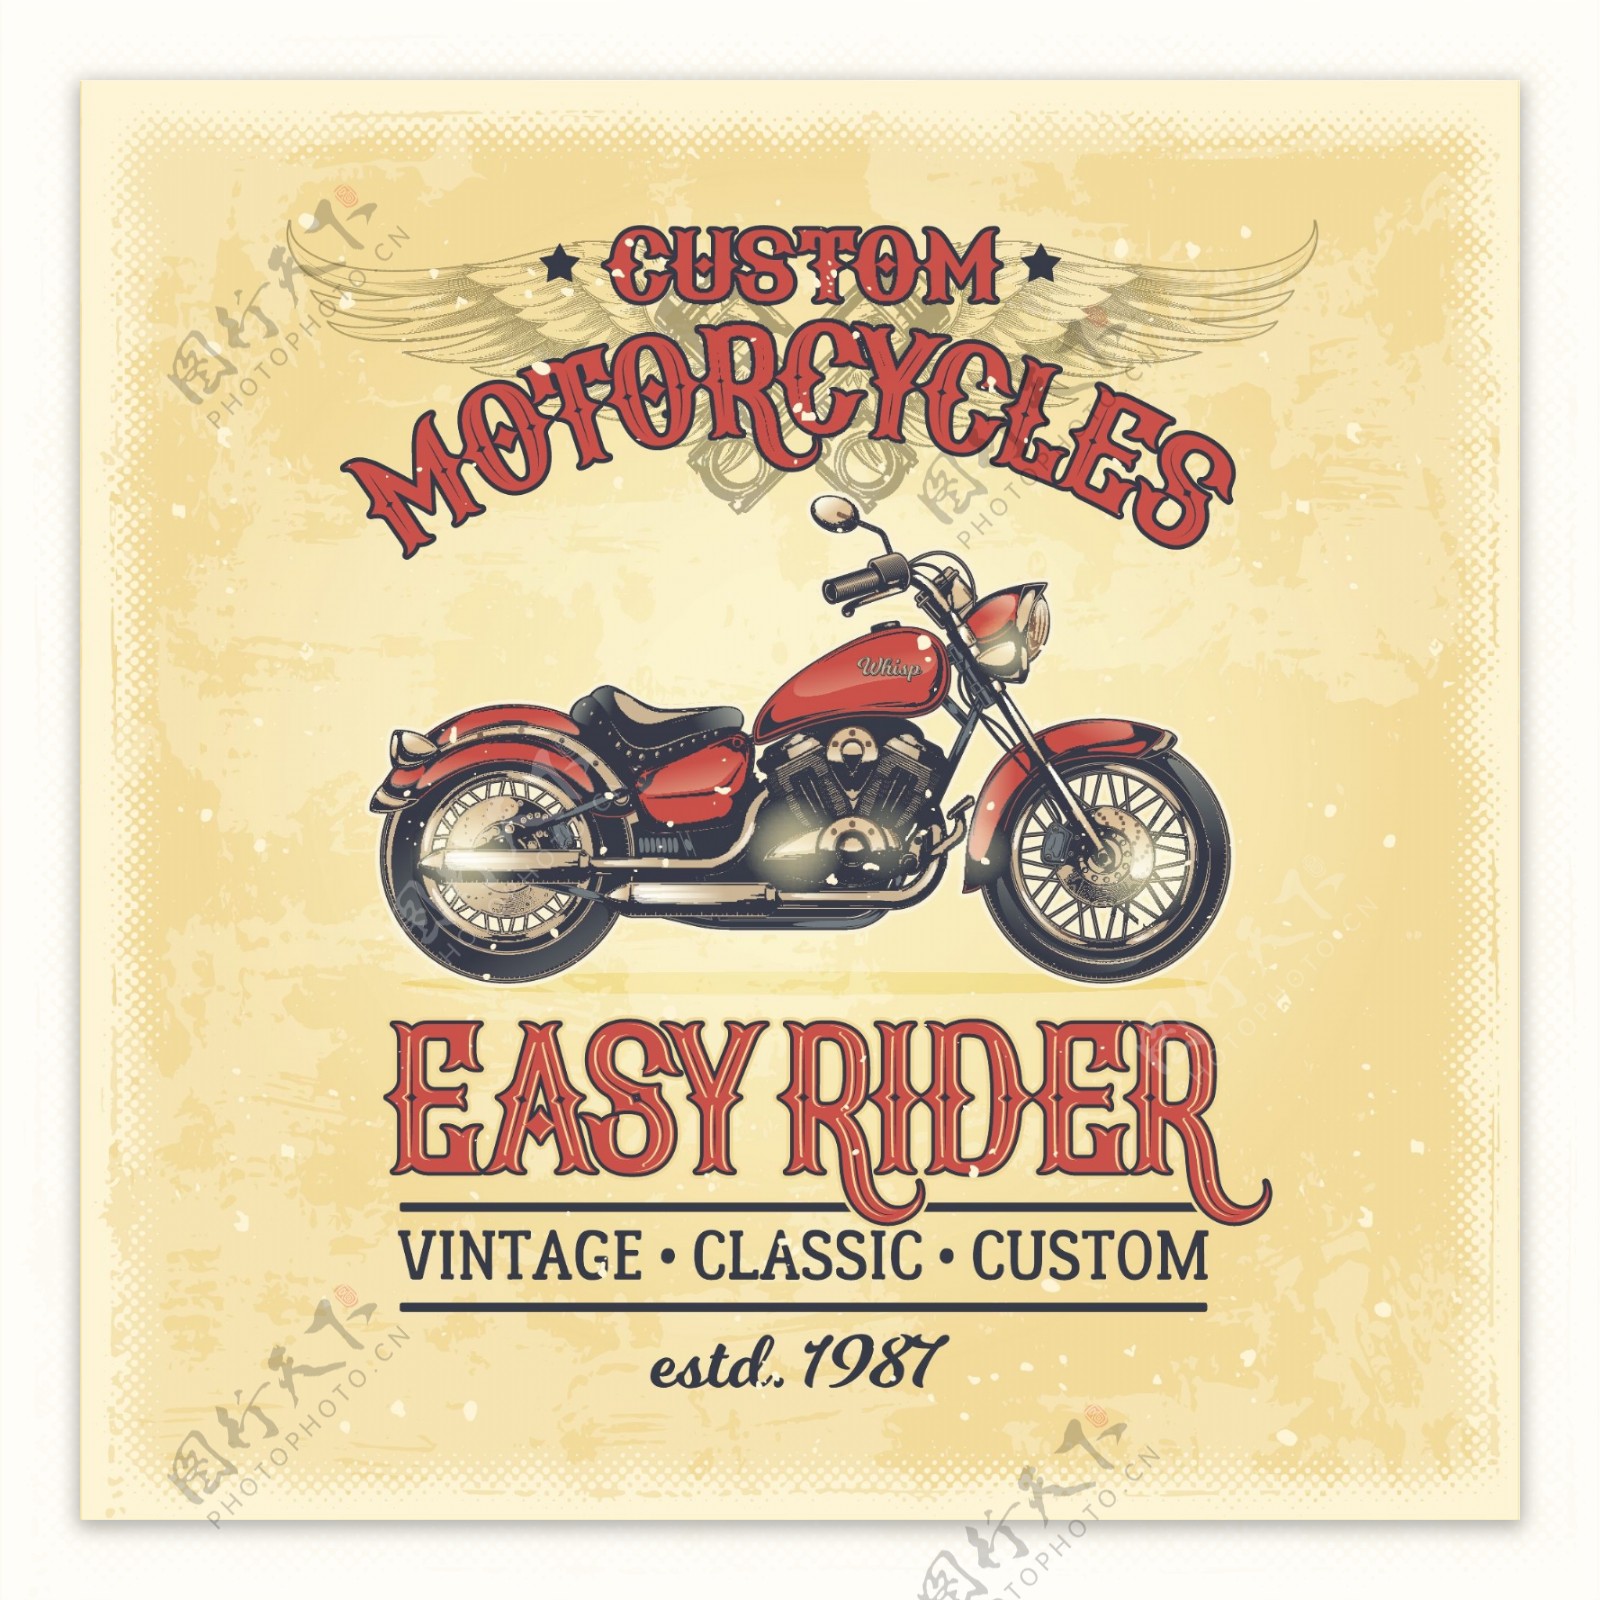 摩托车logo